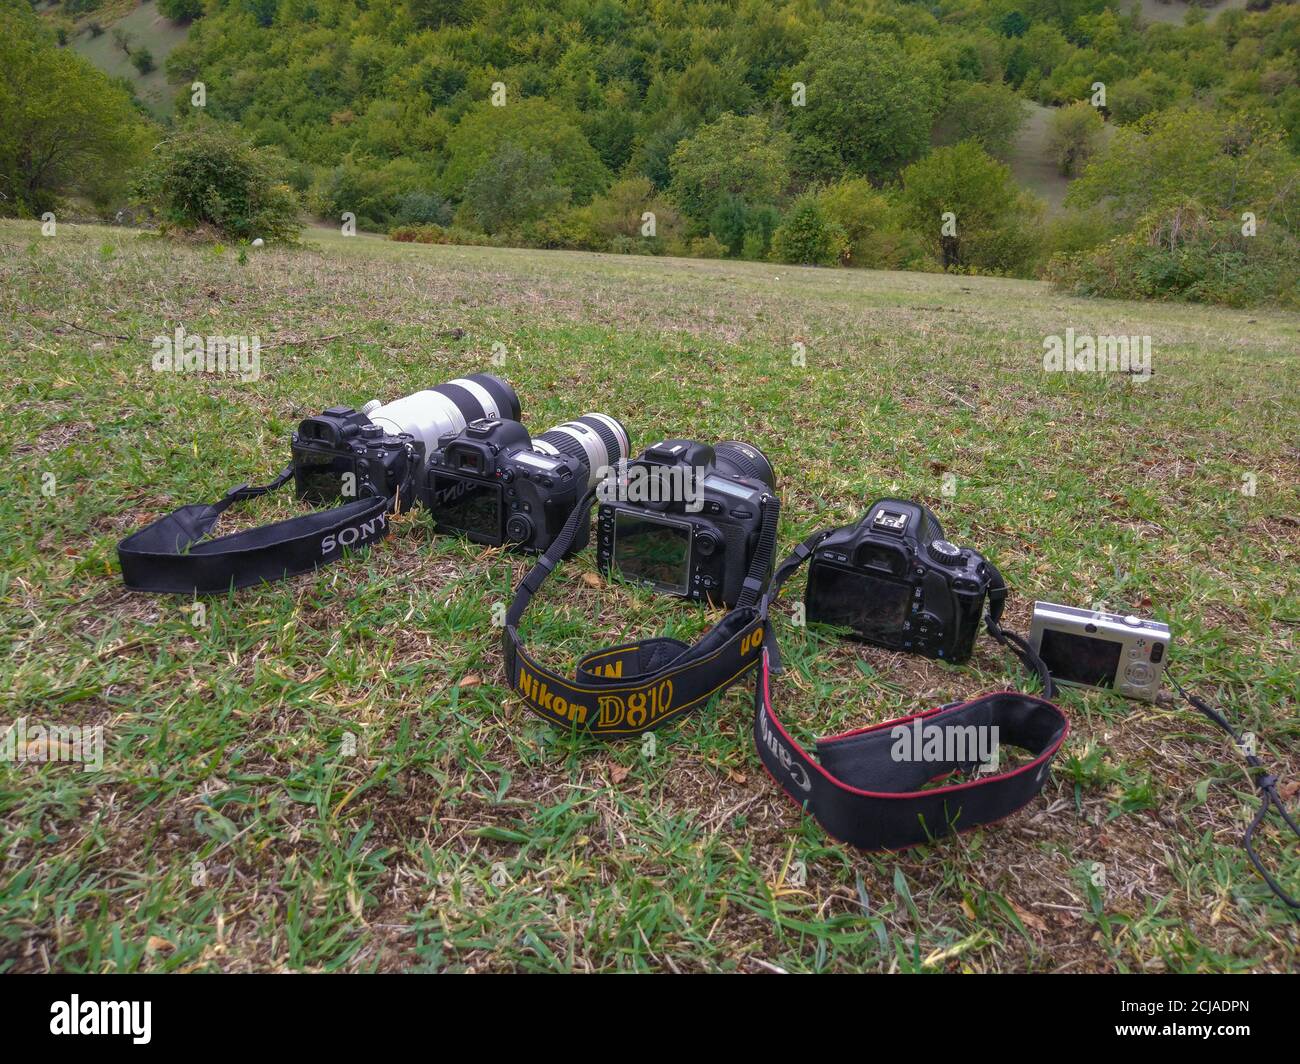 Fotocamere digitali per scattare foto in natura Foto Stock